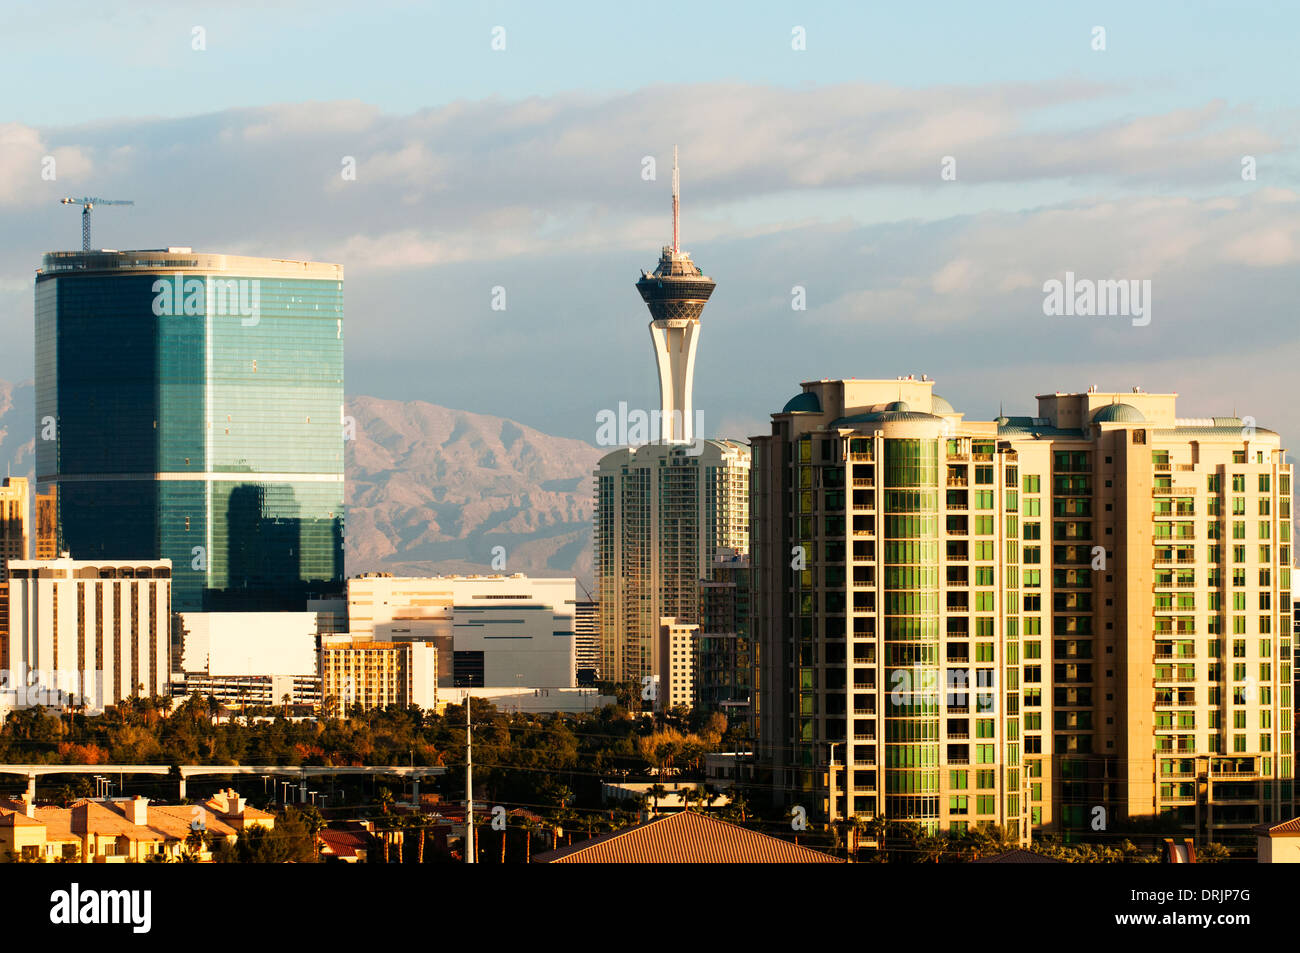 El horizonte de Las Vegas con el hotel Stratosphere en la distancia. Foto de stock